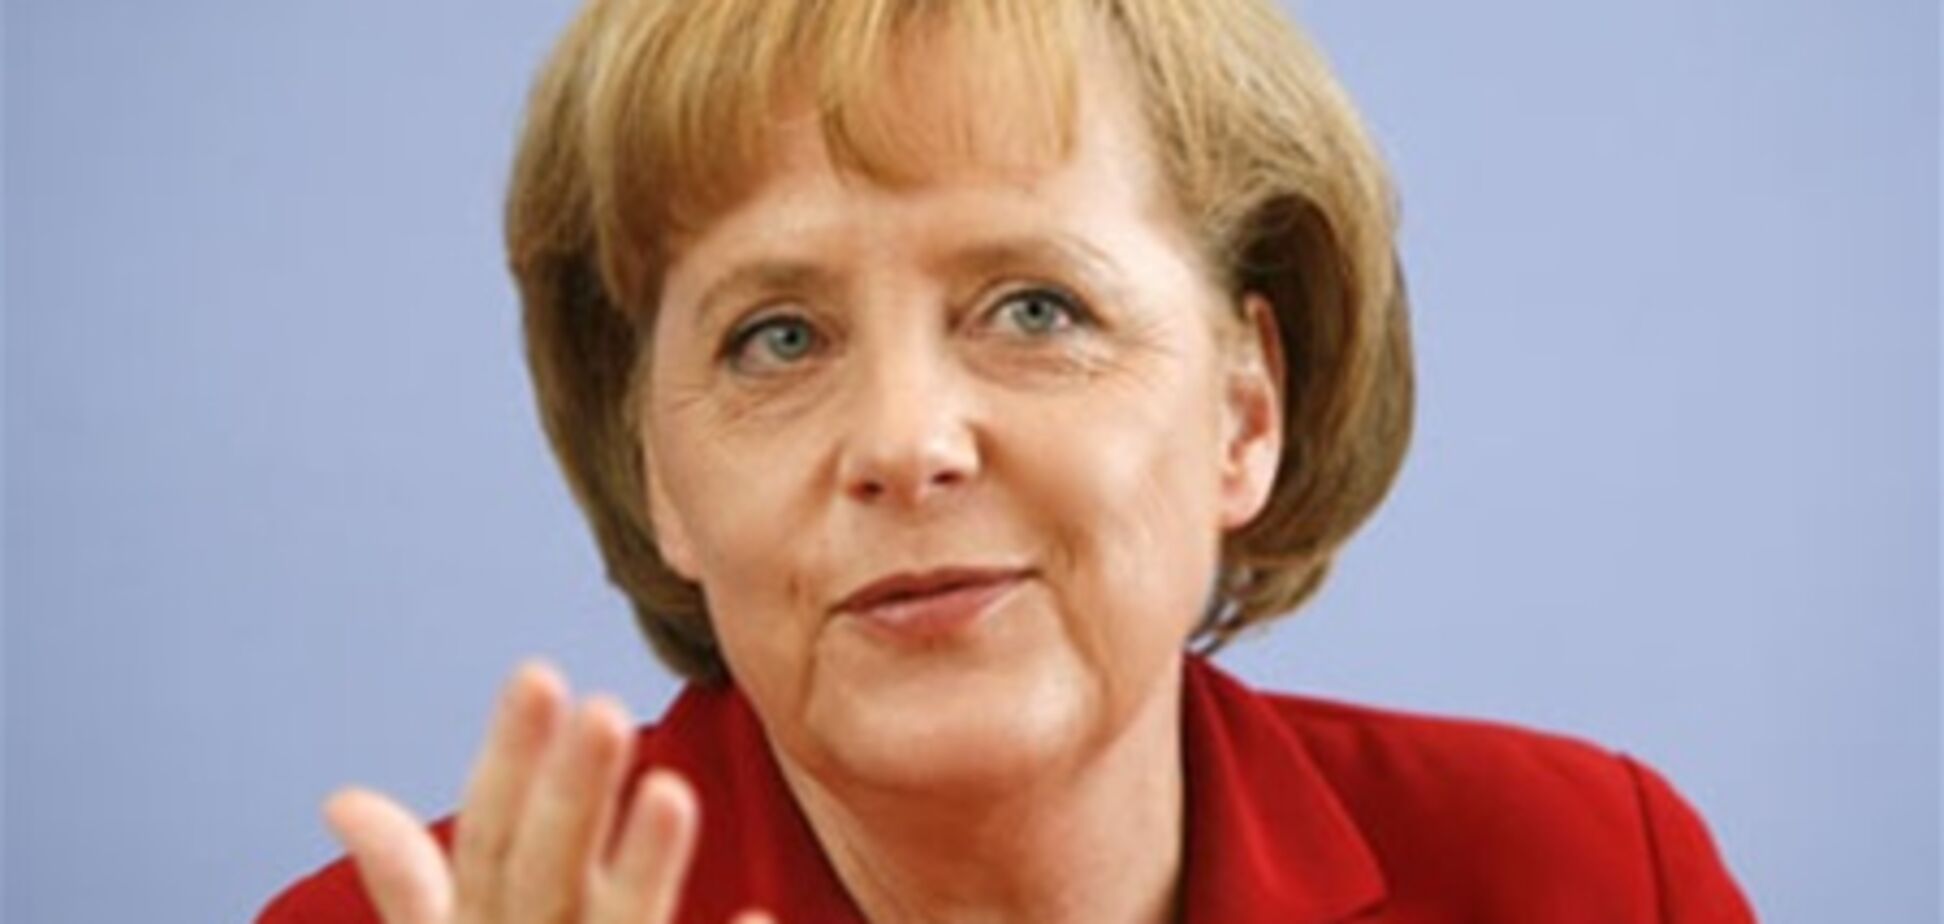 Еврокризис: Меркель хочет взять под контроль крупные банки